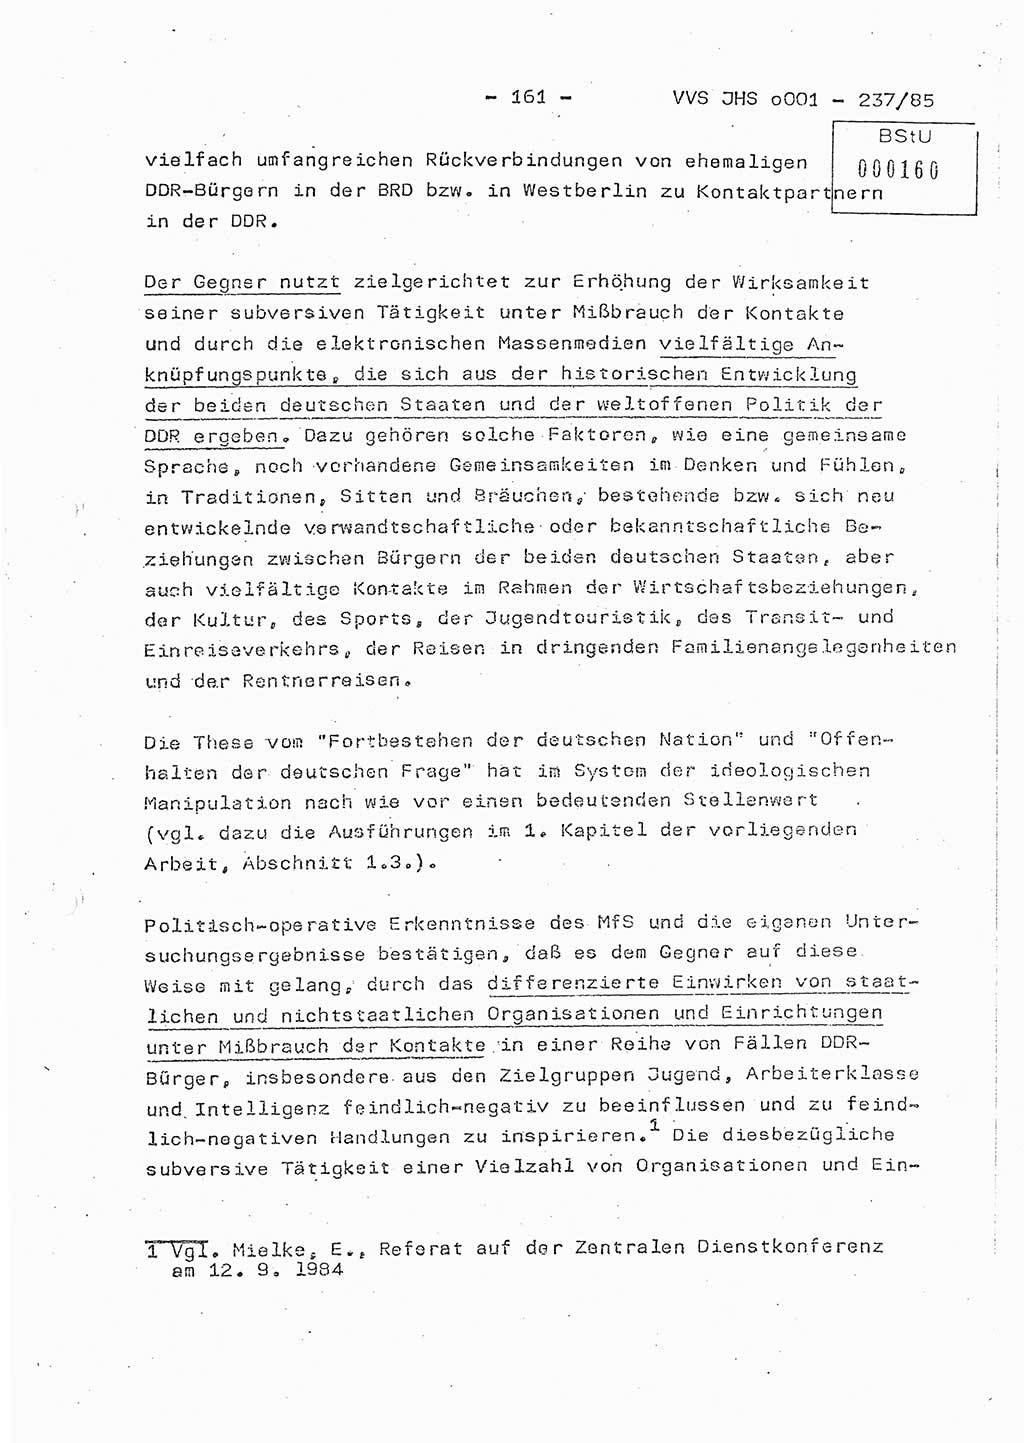 Dissertation Oberstleutnant Peter Jakulski (JHS), Oberstleutnat Christian Rudolph (HA Ⅸ), Major Horst Böttger (ZMD), Major Wolfgang Grüneberg (JHS), Major Albert Meutsch (JHS), Ministerium für Staatssicherheit (MfS) [Deutsche Demokratische Republik (DDR)], Juristische Hochschule (JHS), Vertrauliche Verschlußsache (VVS) o001-237/85, Potsdam 1985, Seite 161 (Diss. MfS DDR JHS VVS o001-237/85 1985, S. 161)